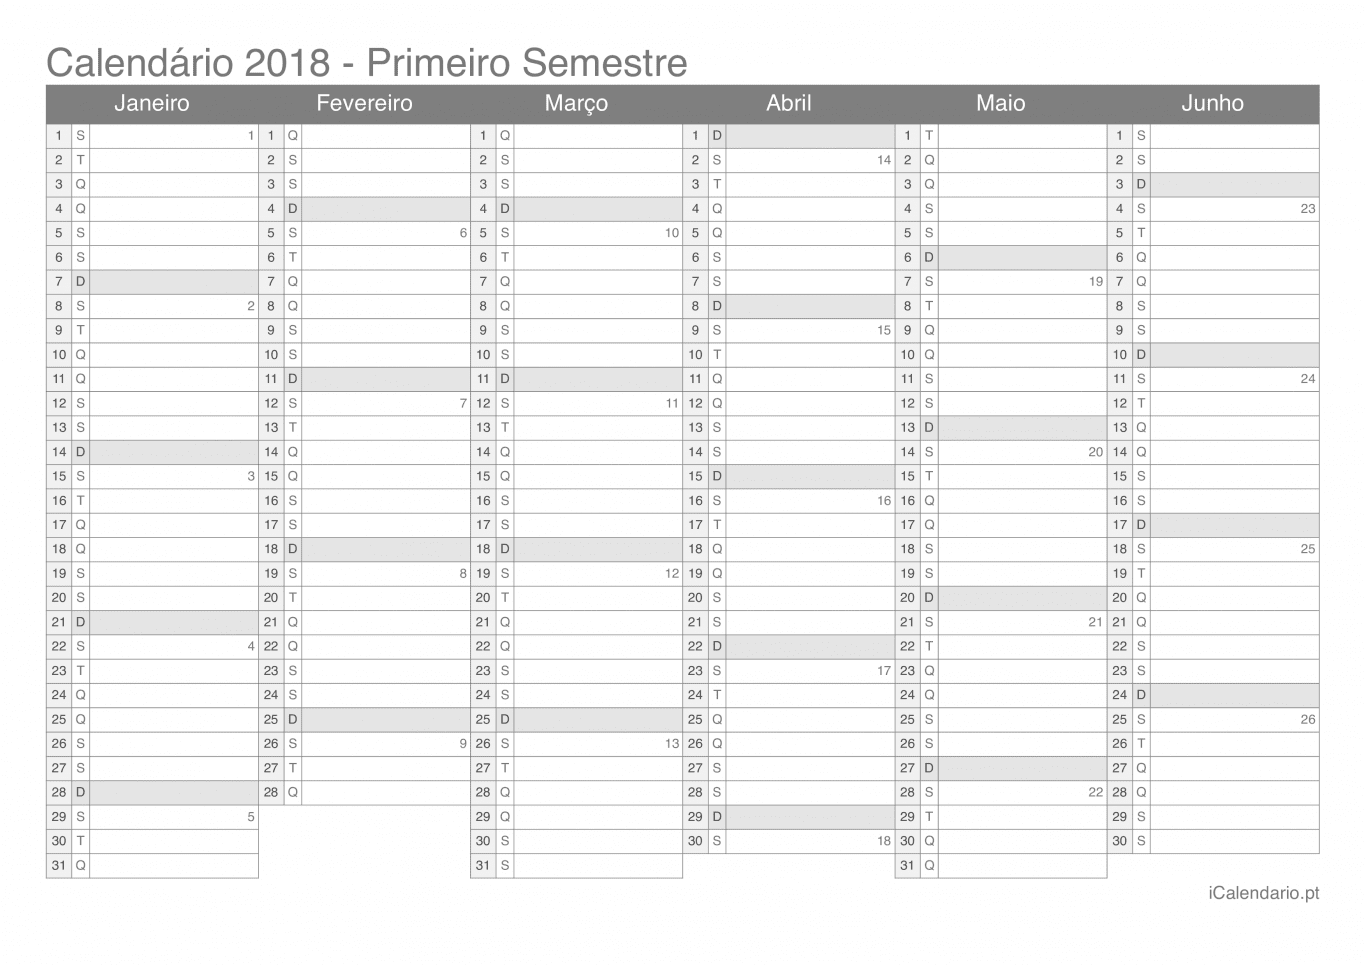 Calendário por semestre com números da semana 2018